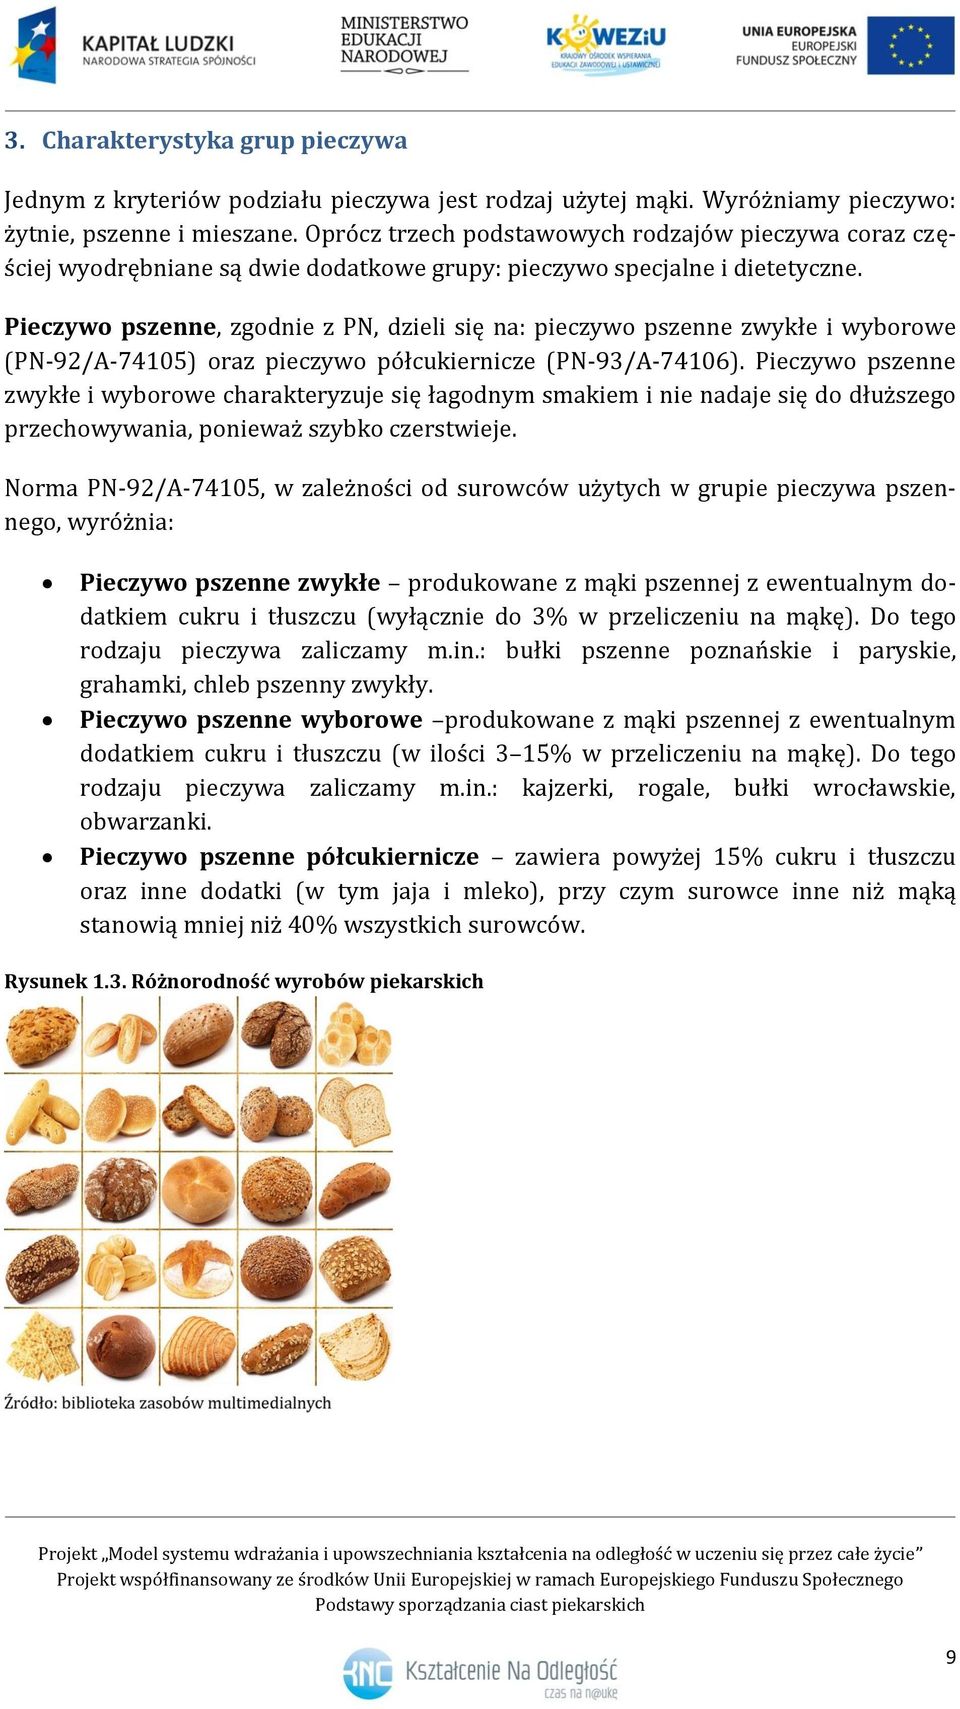 Pieczywo pszenne, zgodnie z PN, dzieli się na: pieczywo pszenne zwykłe i wyborowe (PN-92/A-74105) oraz pieczywo półcukiernicze (PN-93/A-74106).